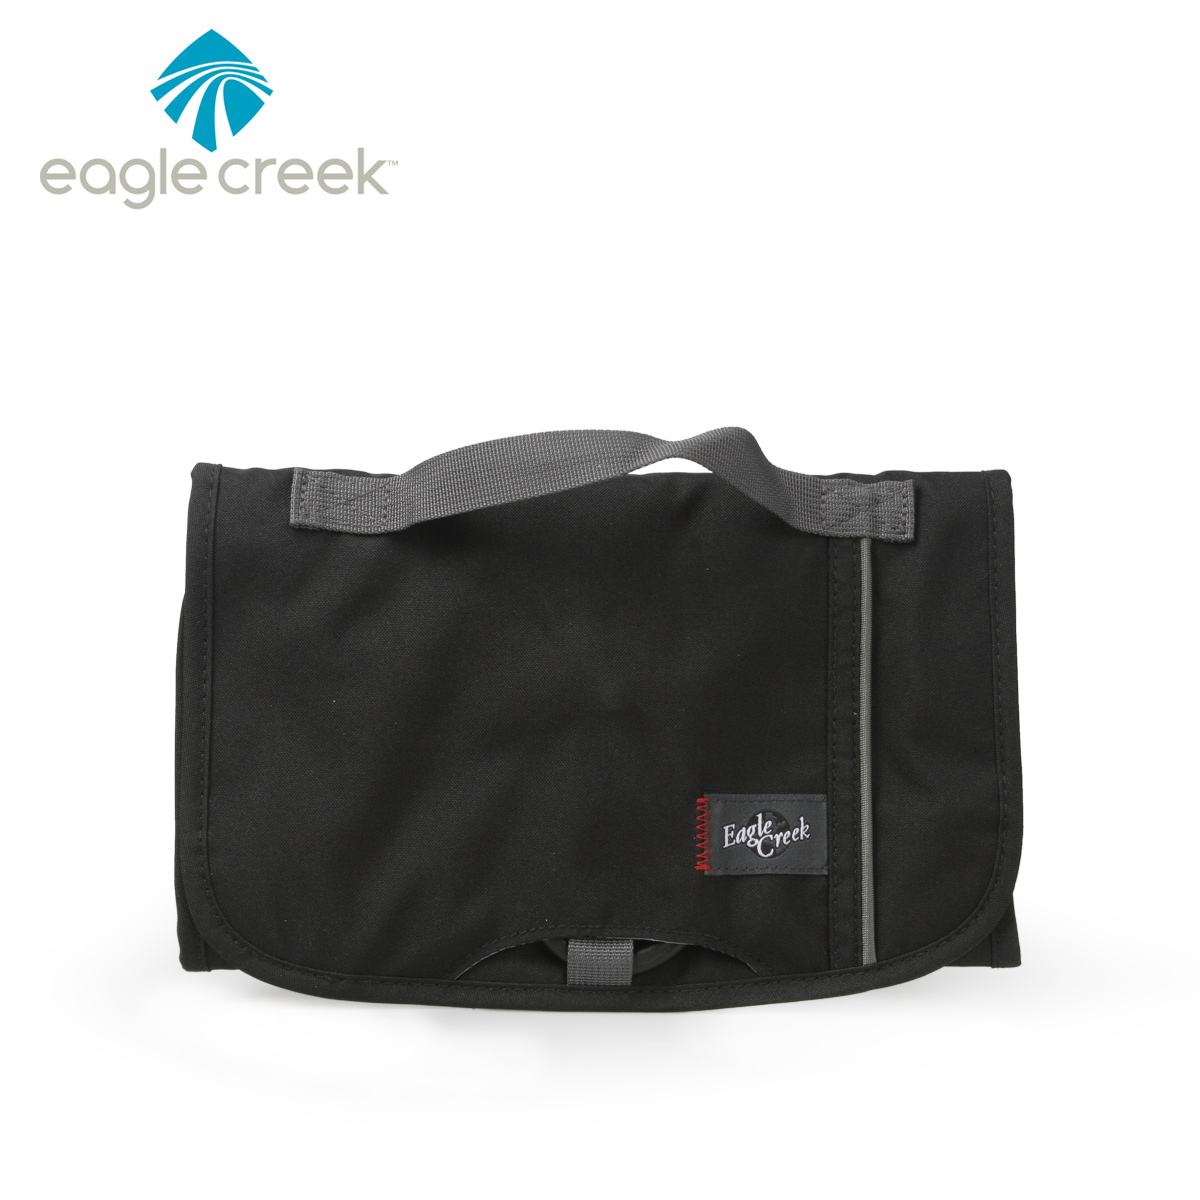 美国eagle creek旅游折叠洗漱化妆包 收纳袋 挂袋出差旅行打理袋